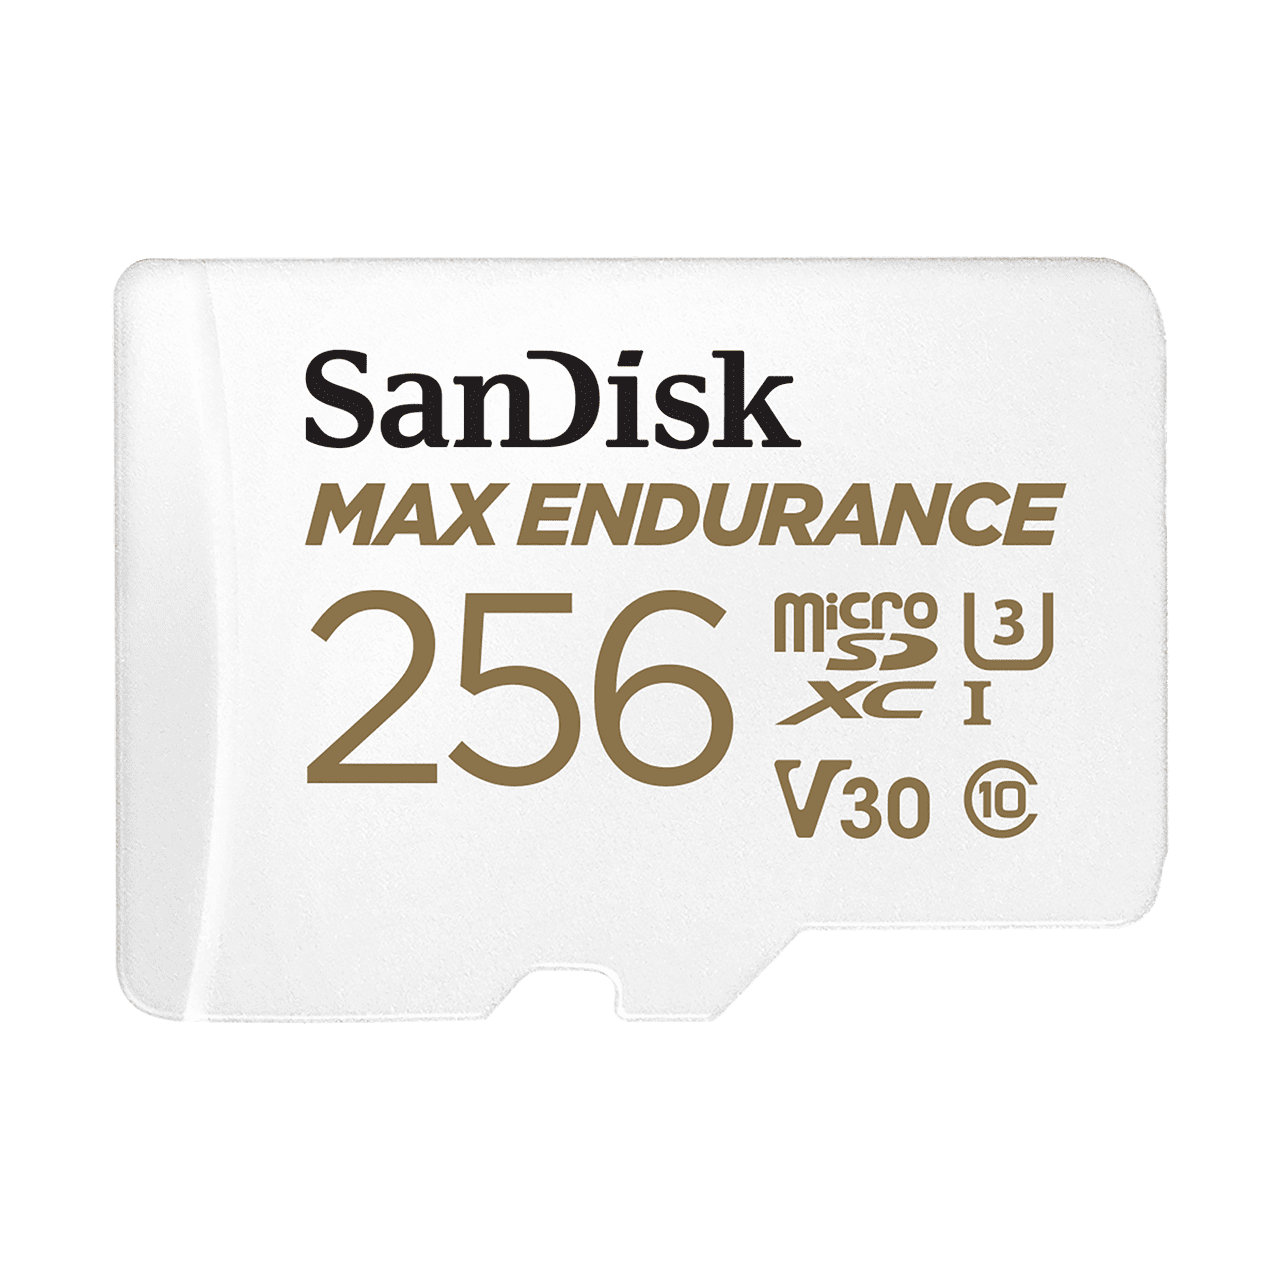 照片中提到了SanDisk、MAX ENDURANCE、256，跟全球安全兒童有關，包含了標誌、存儲卡、Sandisk SDSQQVR MAX ENDURANCE MicroSDHC卡、產品設計、商標